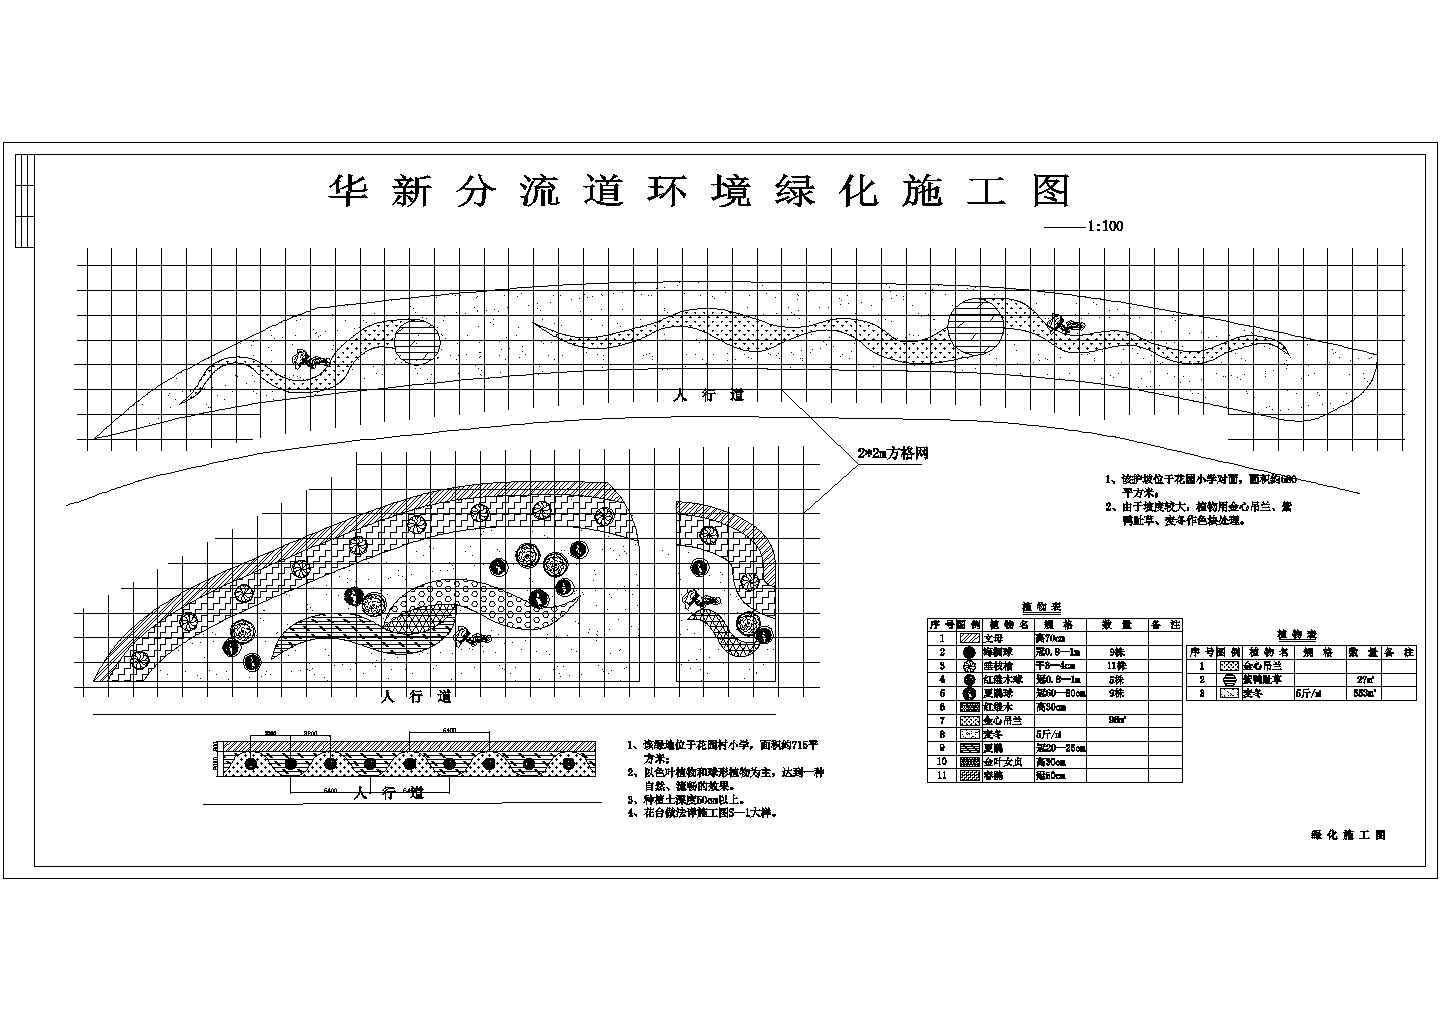 华新分流道环境绿化景观设计工程图纸